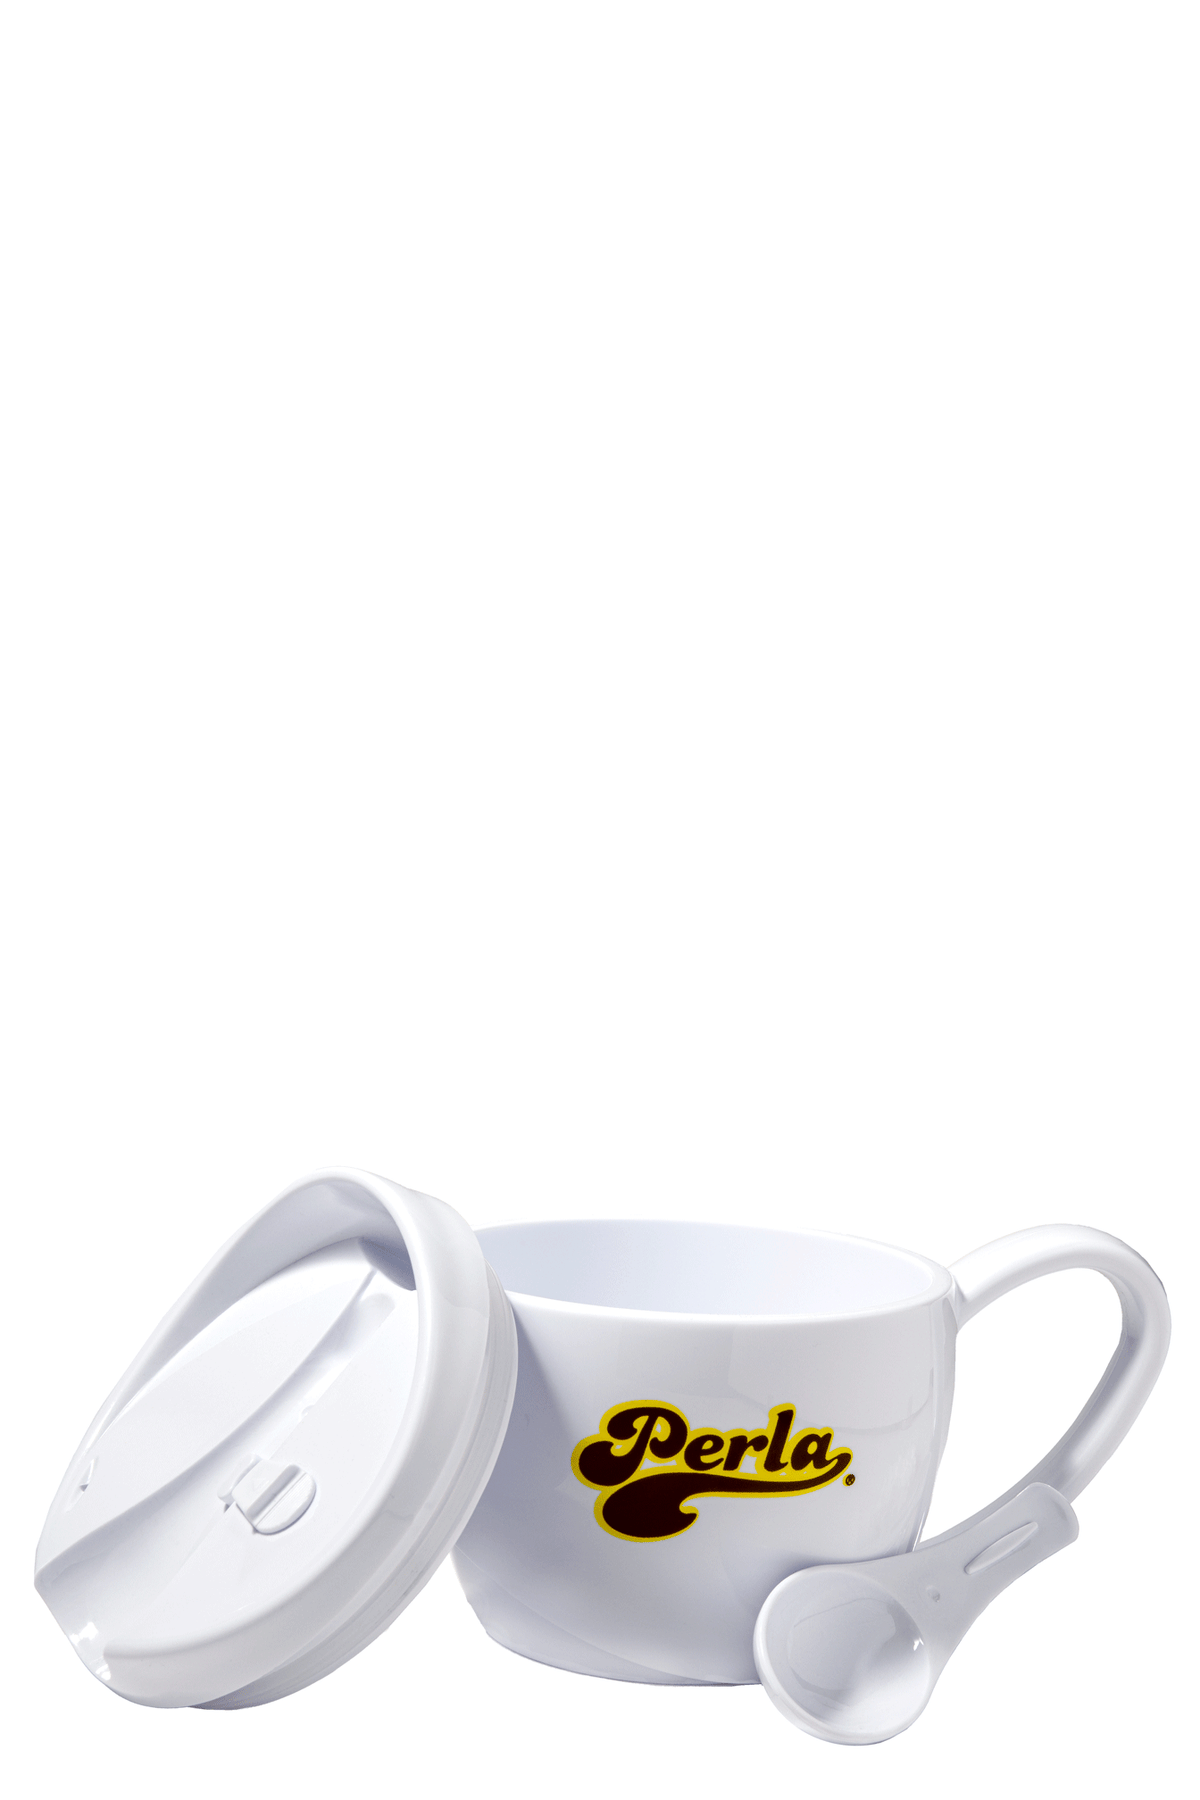 Perla Merch  - Soup Mug w/ Spoon 15oz